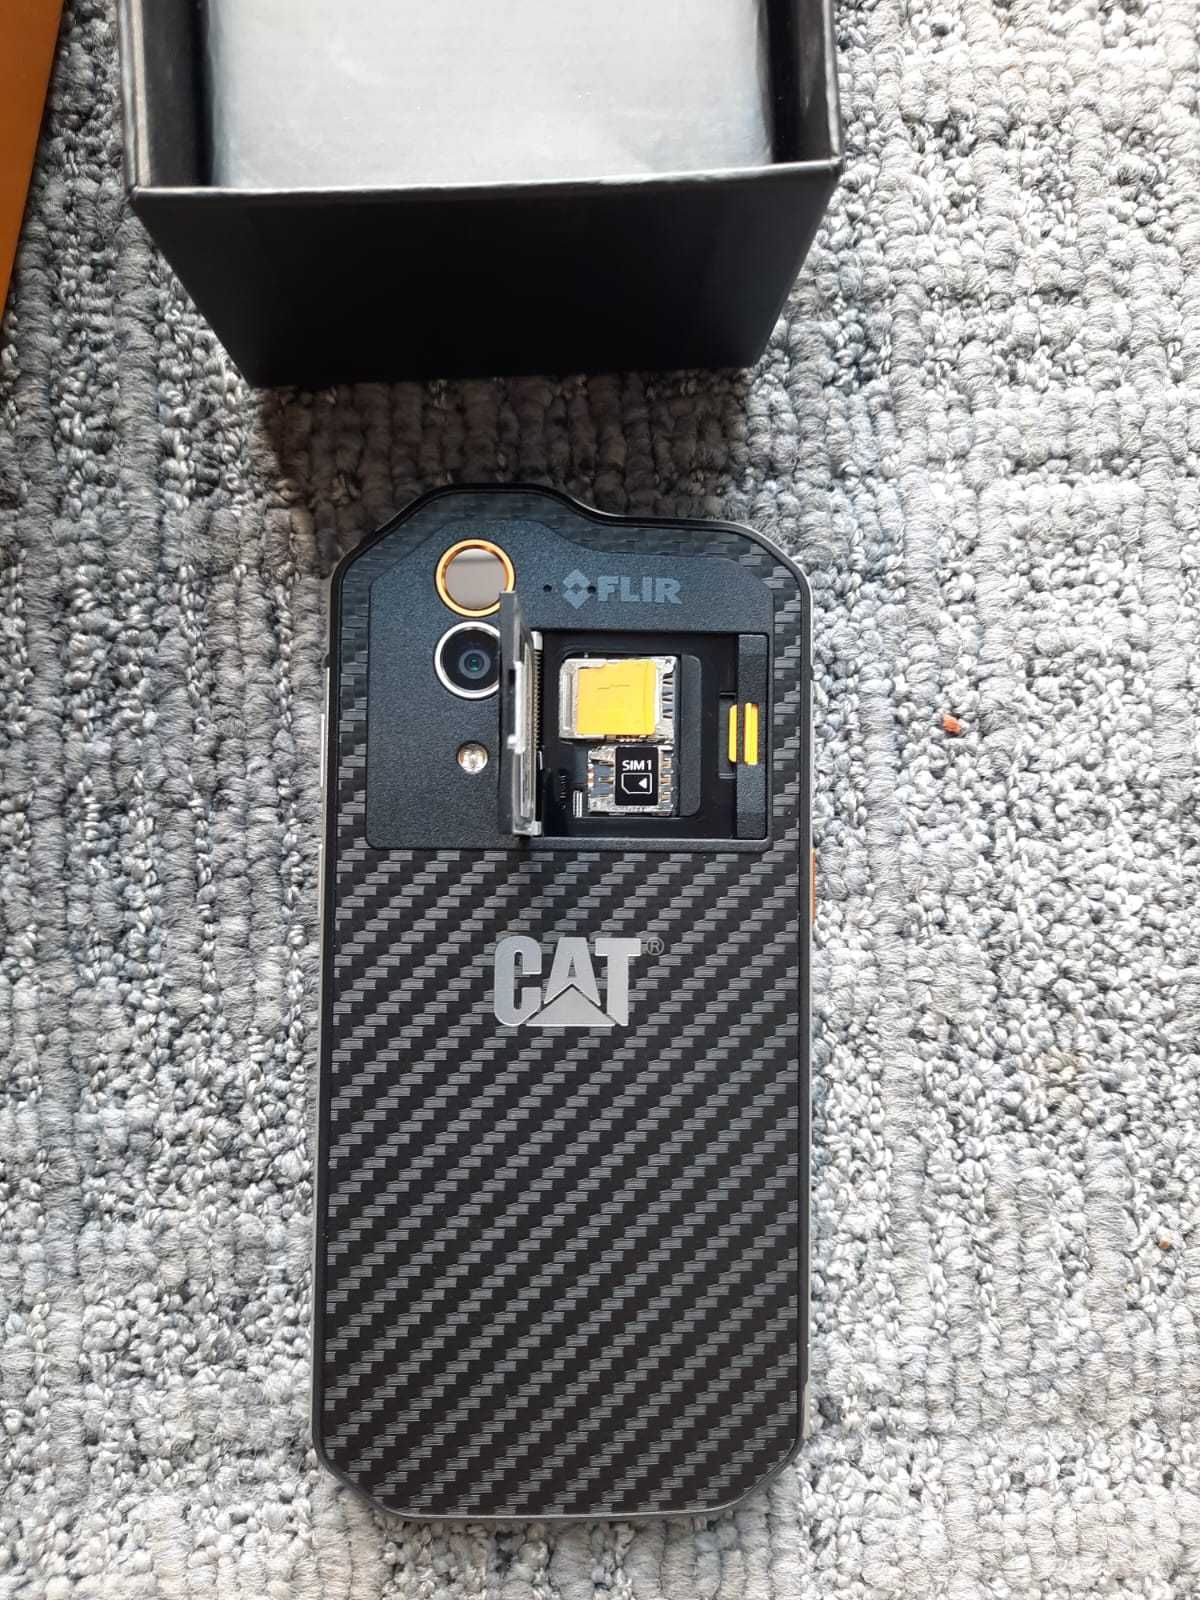 CAT S60 Telefon Caterpillar